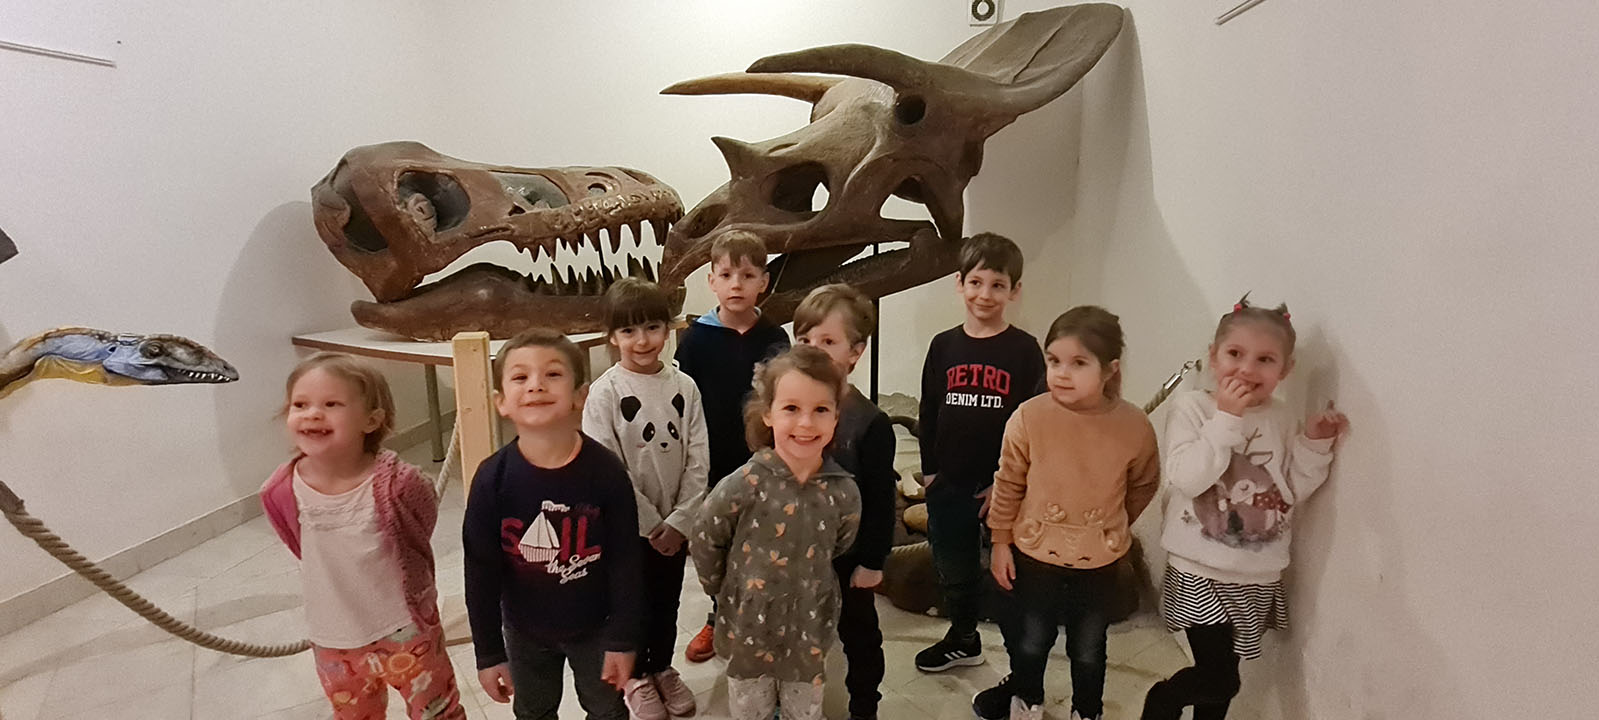 Föld napja: gyerekek dinoszaurusz csontok és koponyák előtt állnak